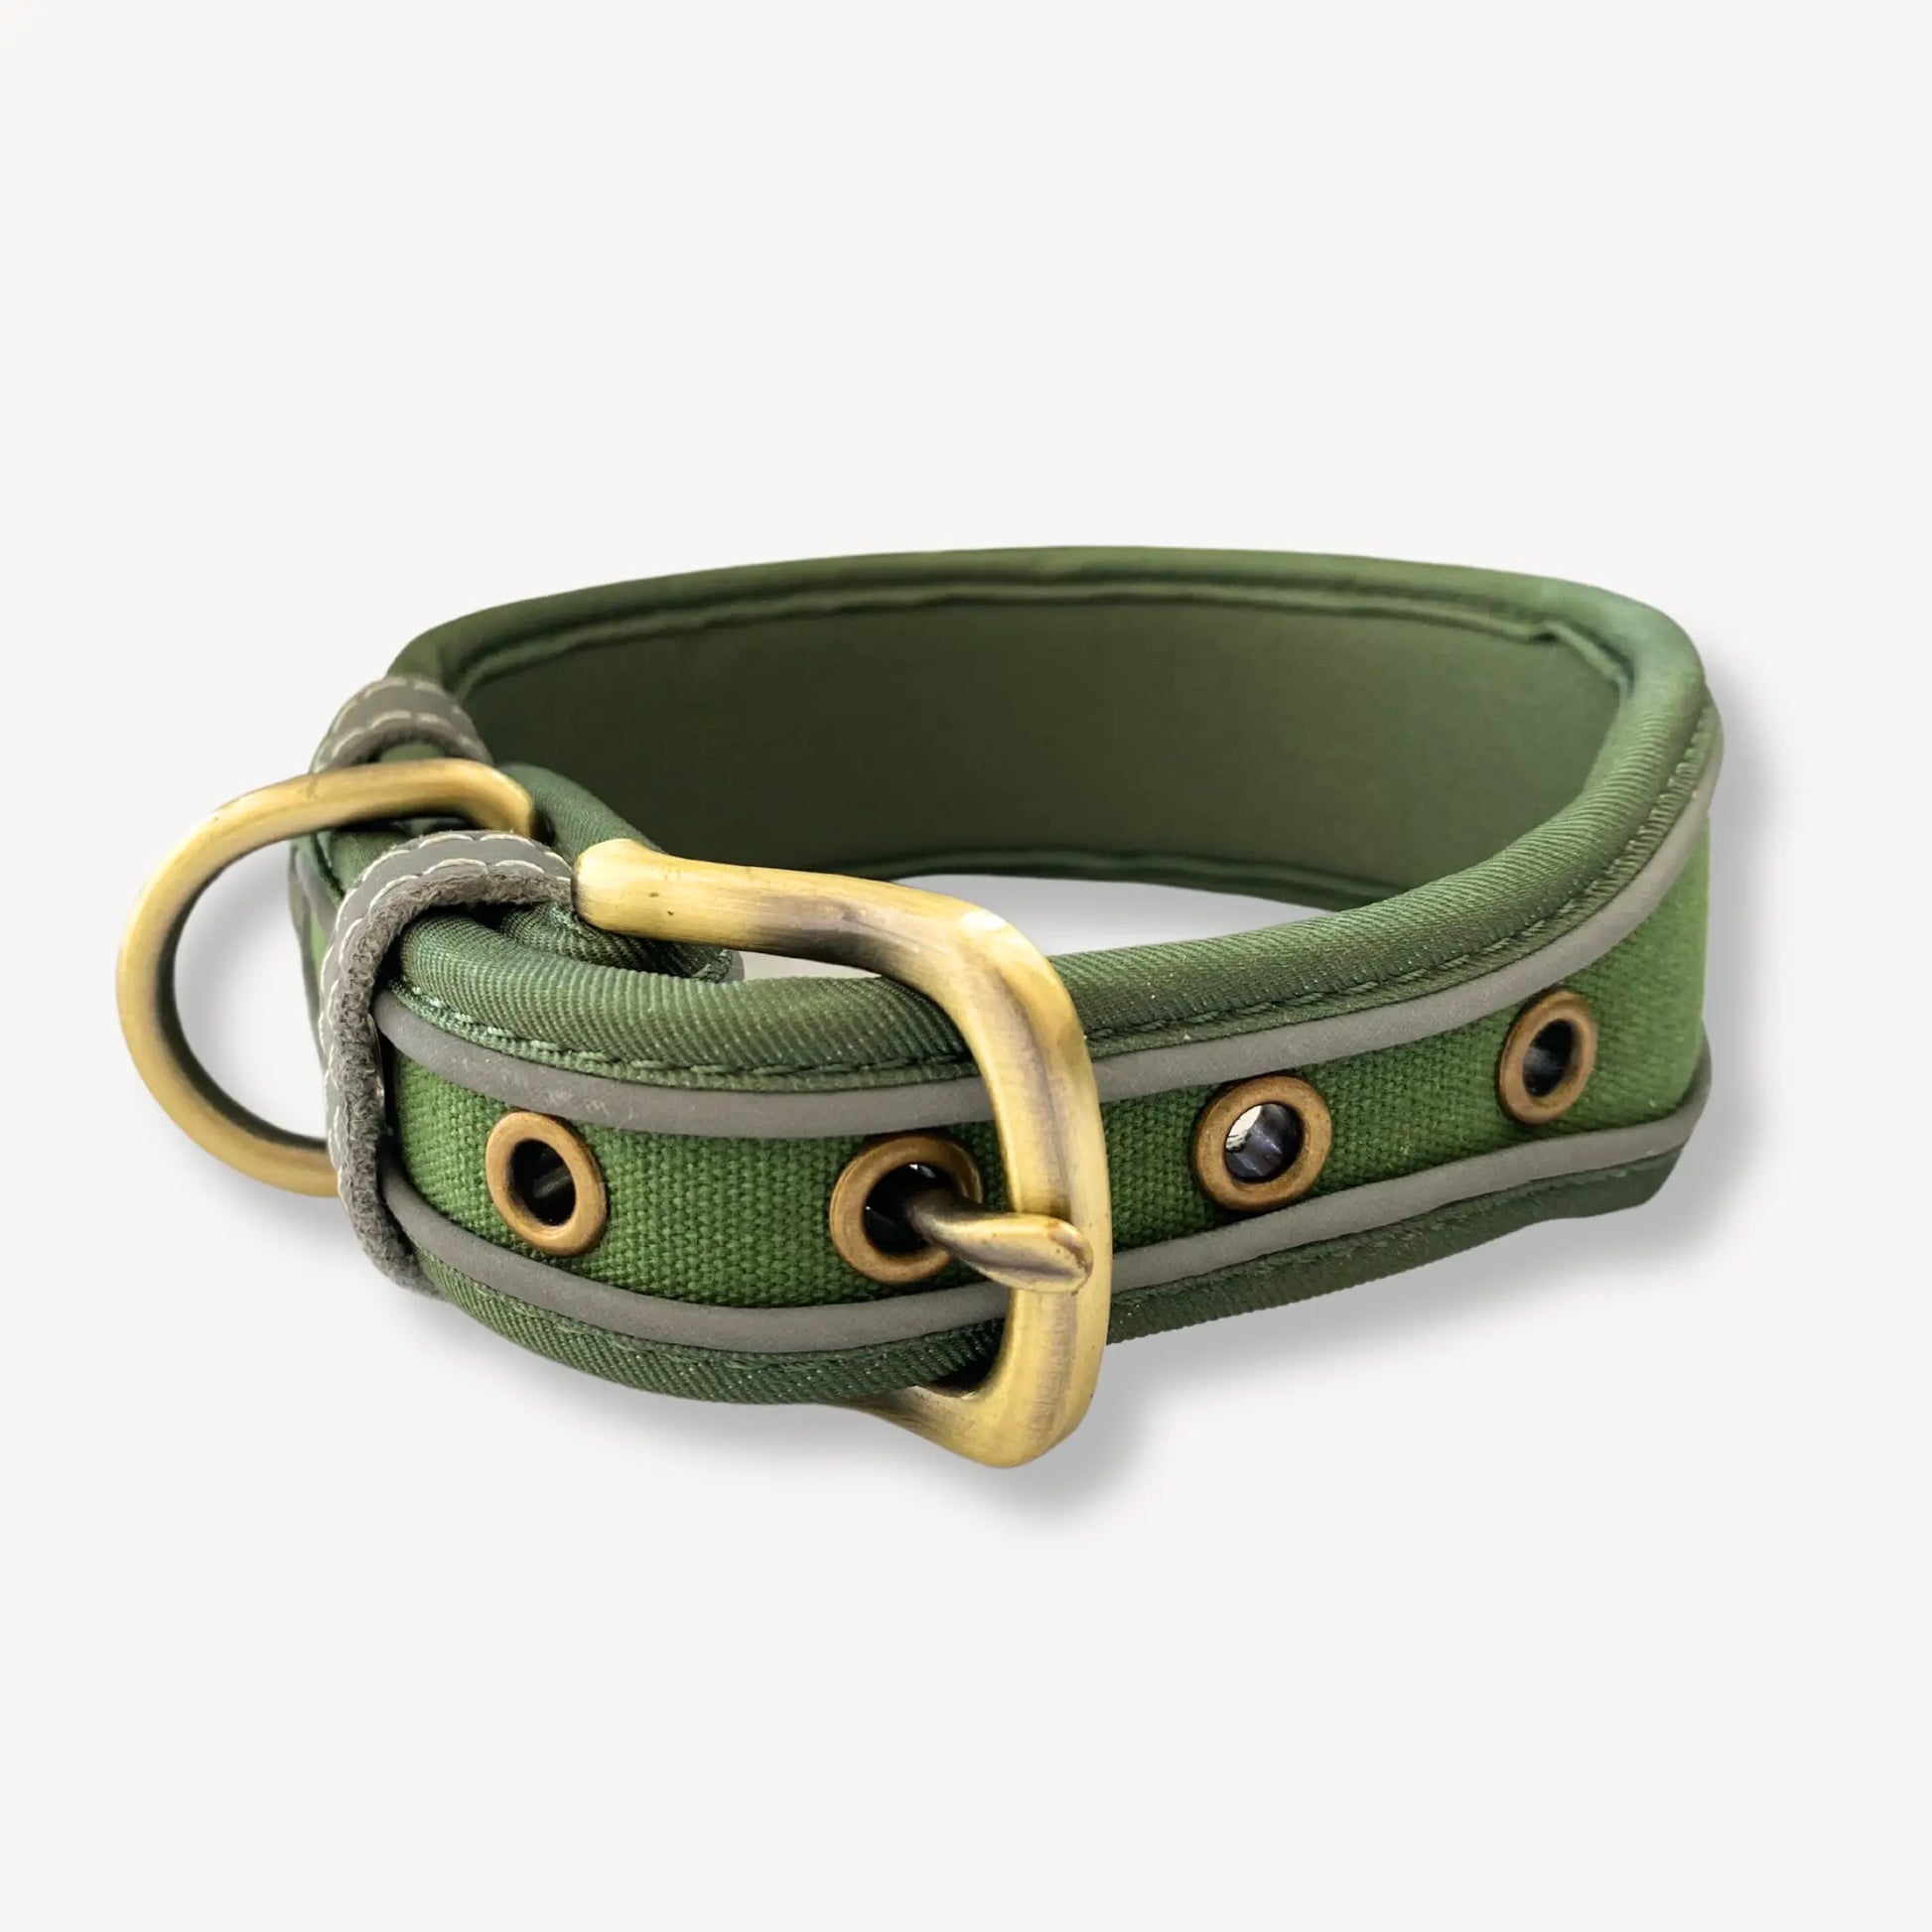 Lex Large Dog Collar - Green